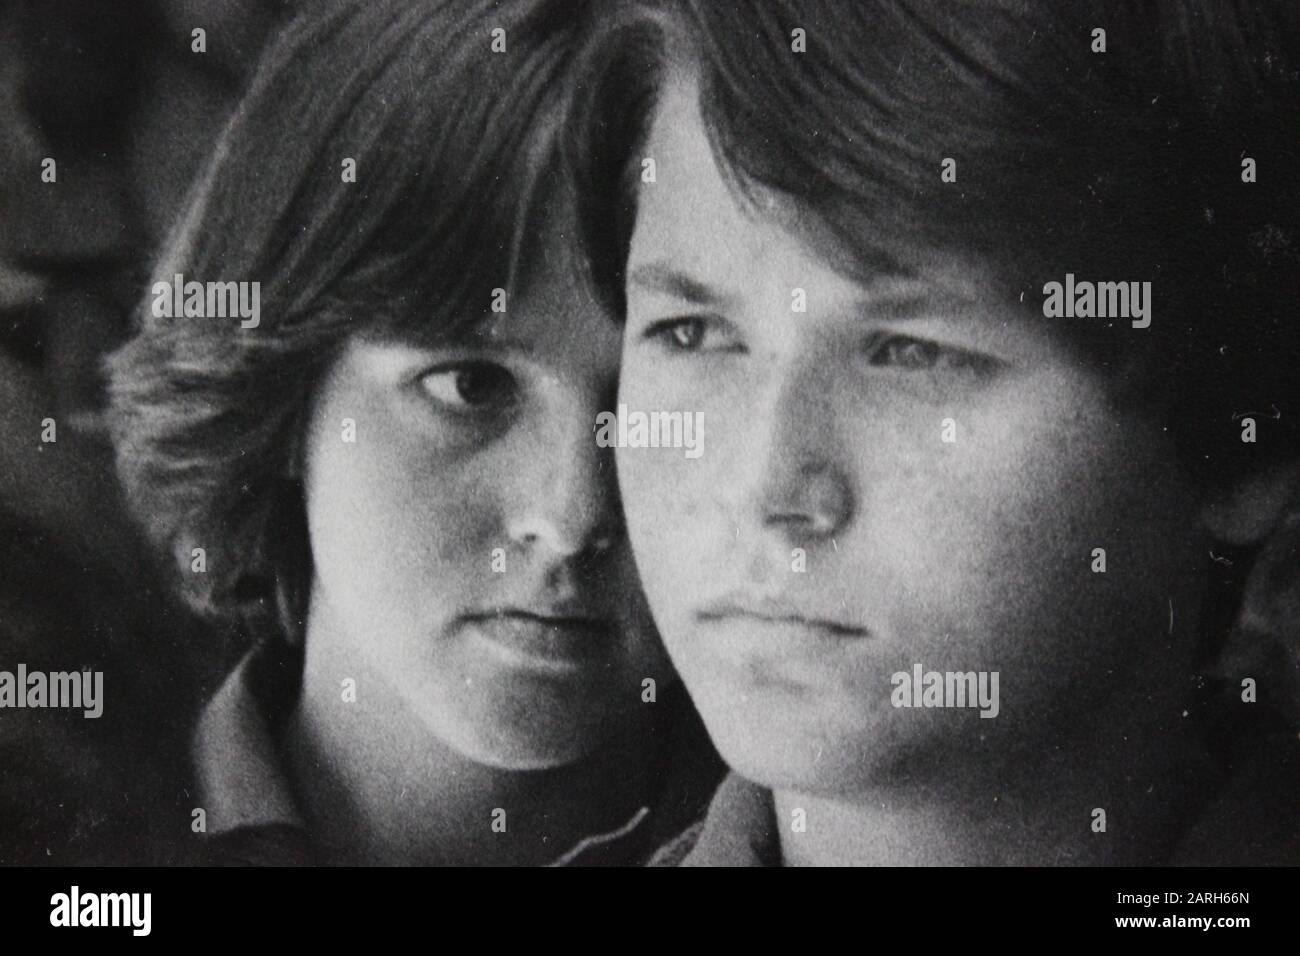 Fine photographie d'époque noir et blanc des années 1970 d'un adolescent chuchotant à un autre adolescent suspect Banque D'Images